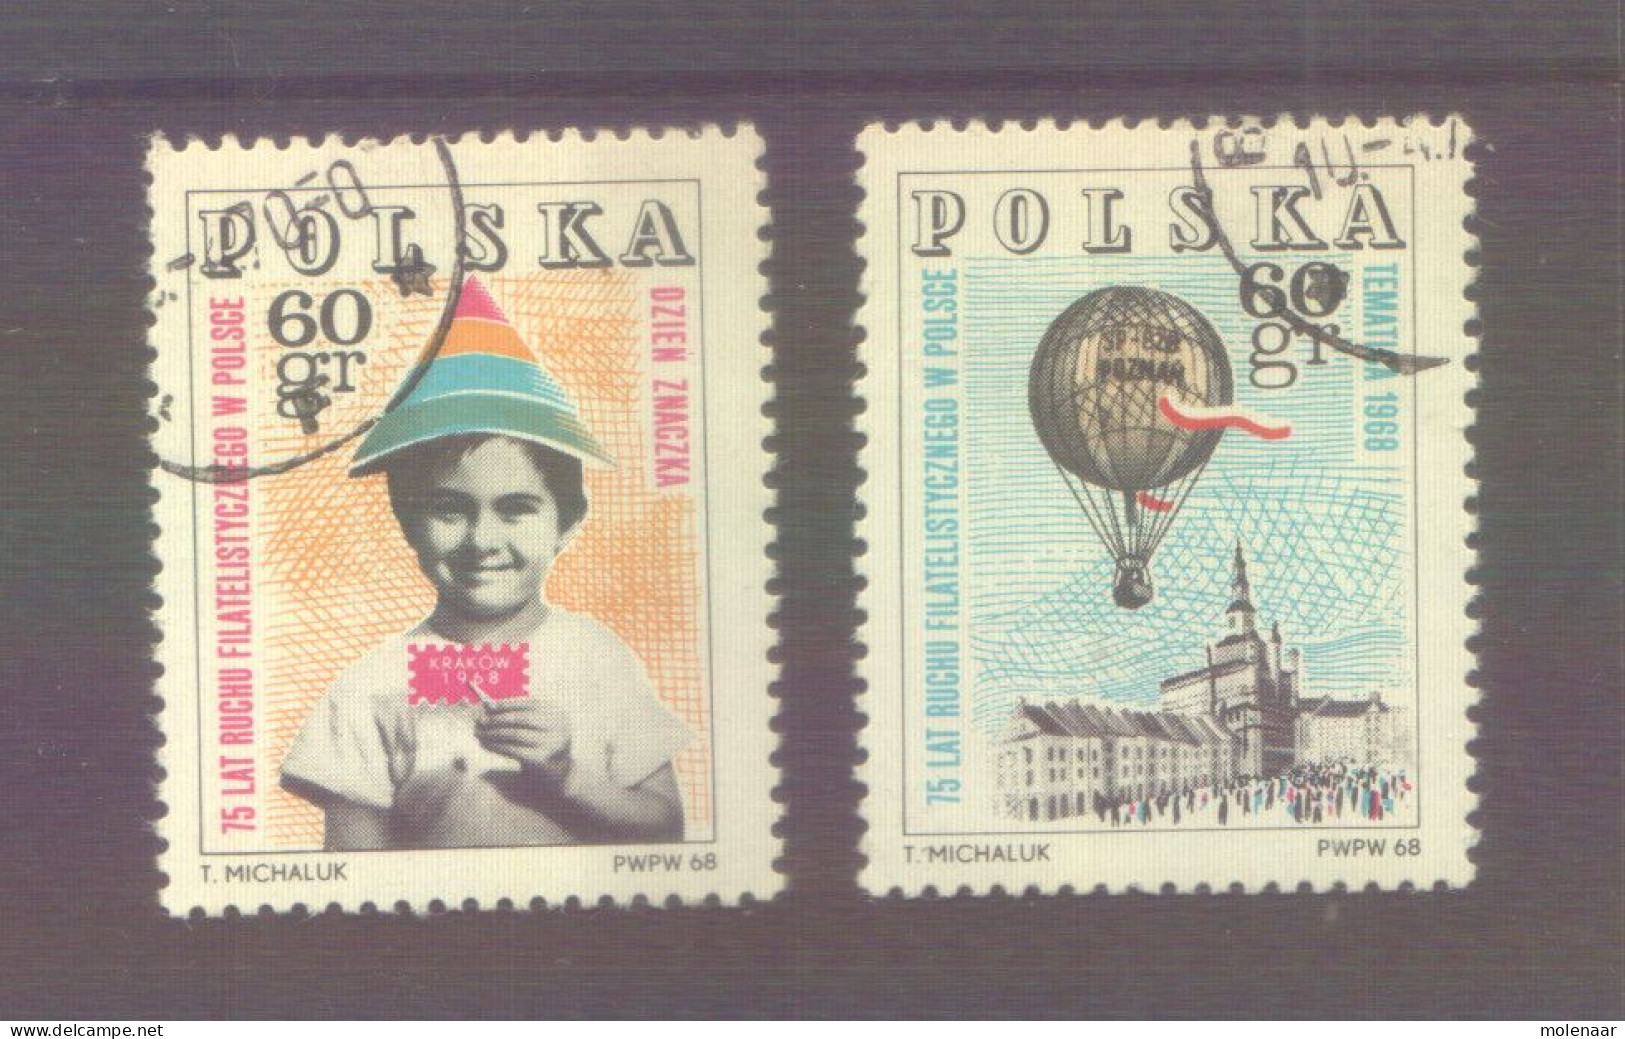 Postzegels > Europa > Polen > 1944-.... Republiek > 1961-70 > Gebruikt No. 1814-1846 (12013) - Oblitérés